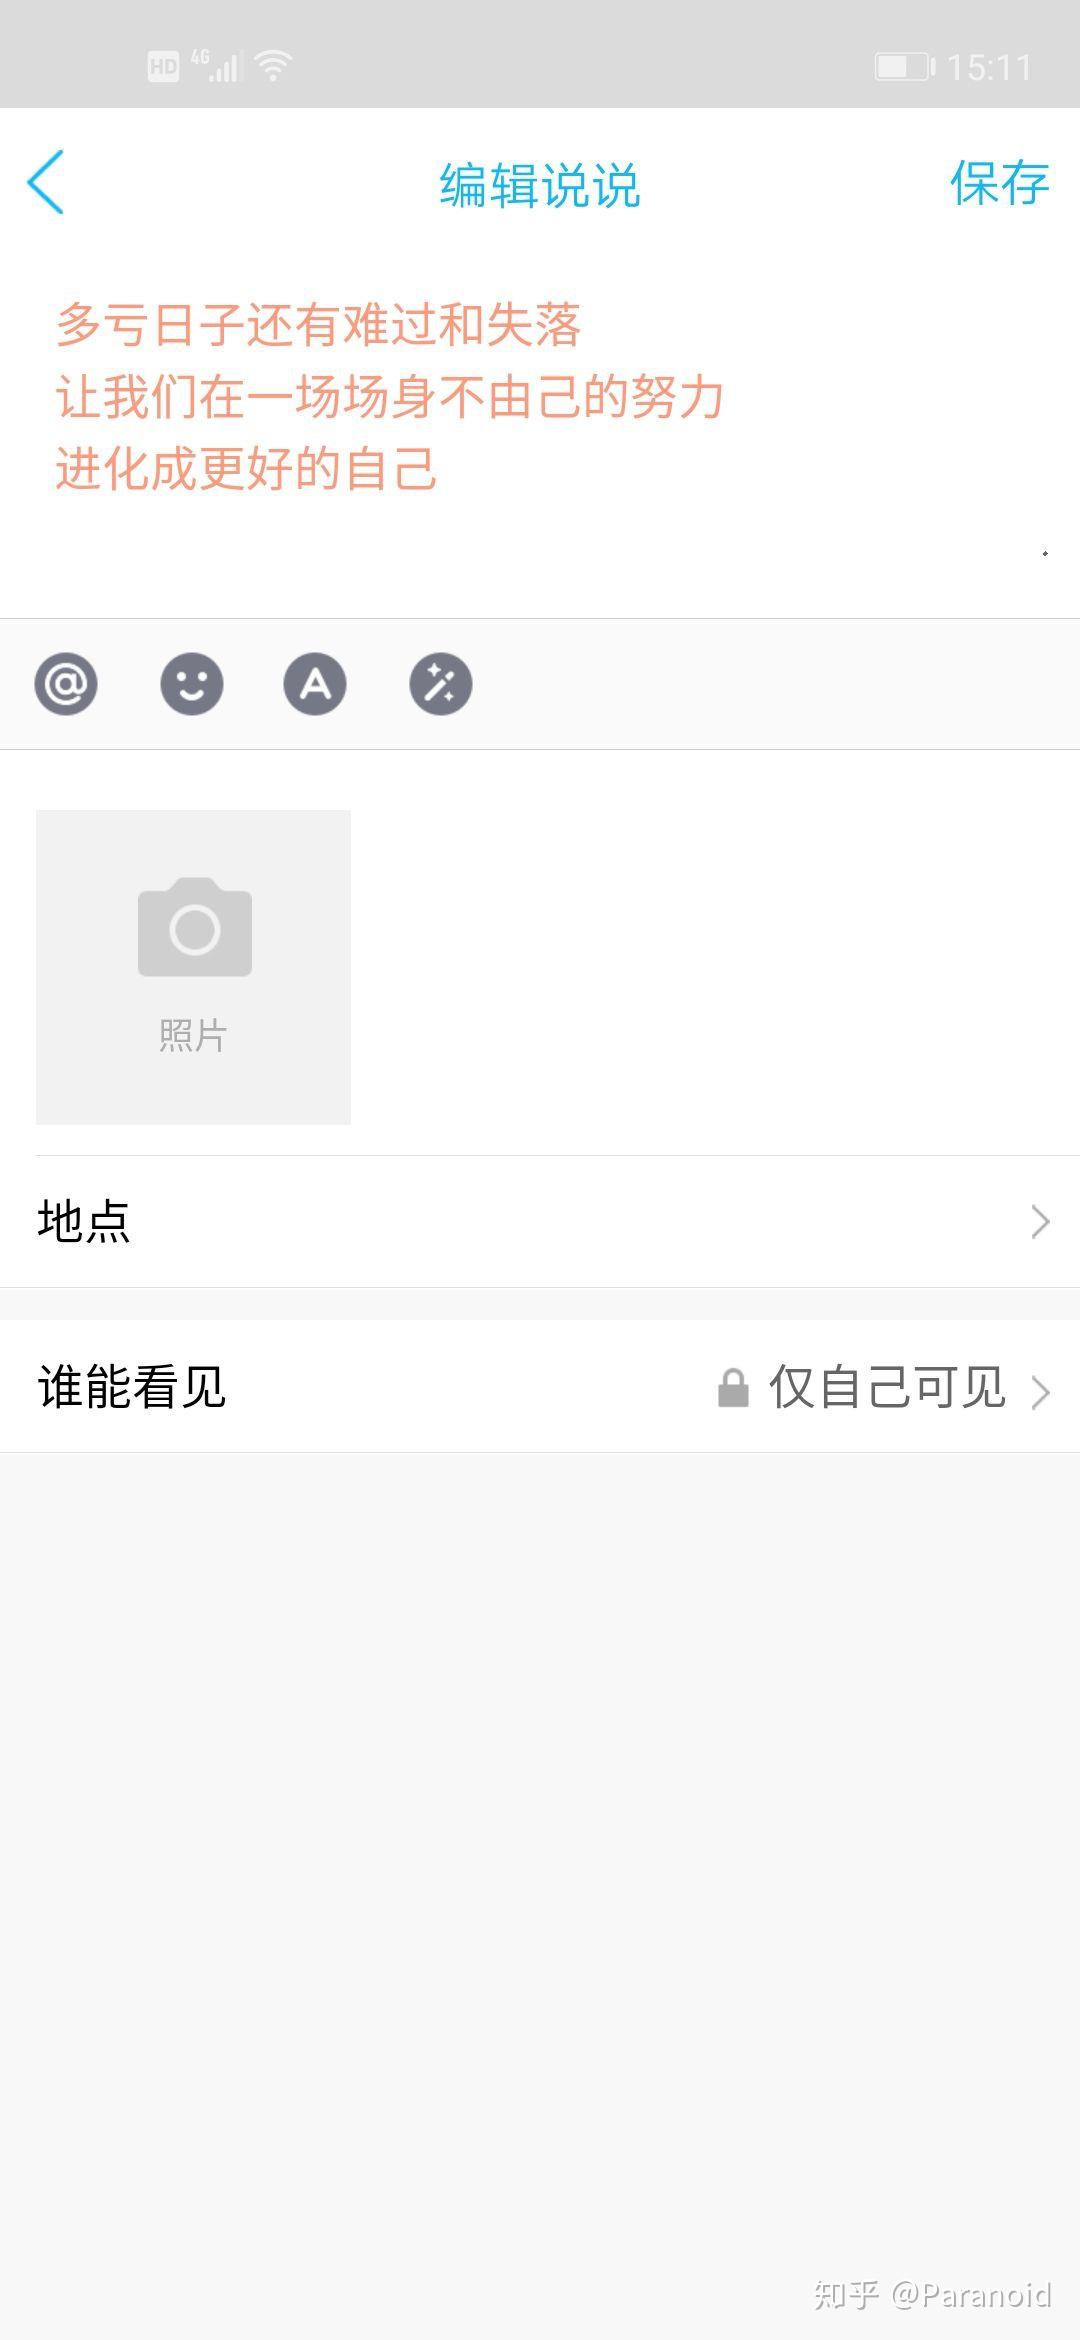 QQ空间app下载_手机QQ空间安卓版下载8.6.2.288_大番茄